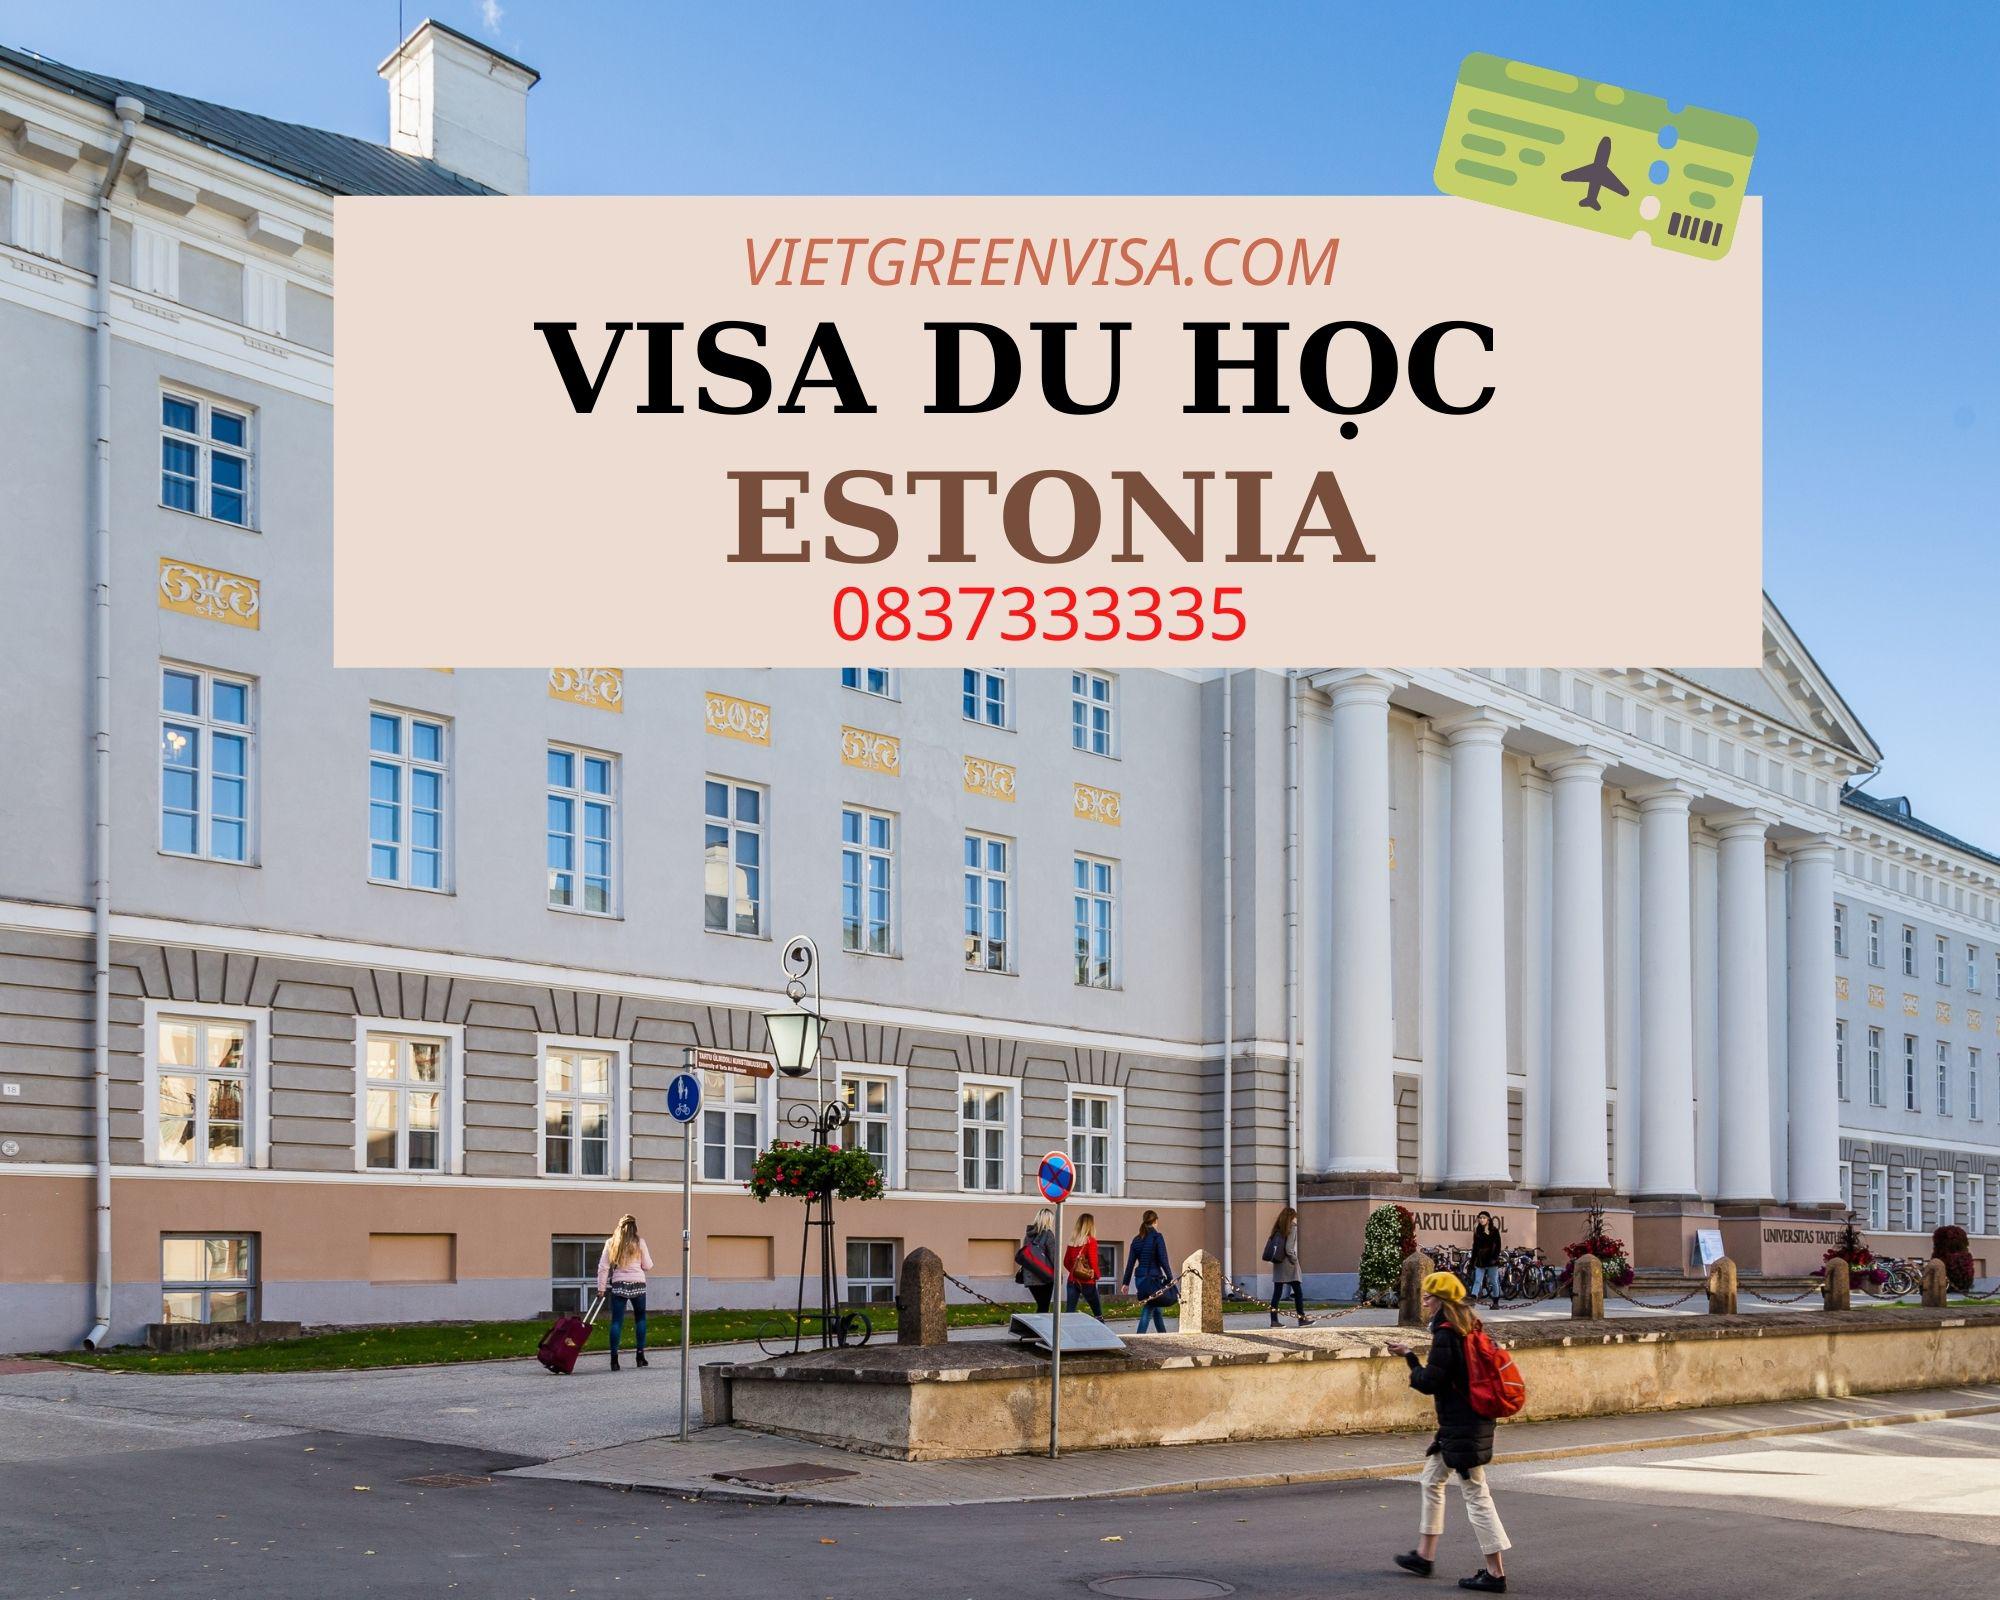 Dịch vụ tư vấn visa du học Estonia trọn gói từ A->Z